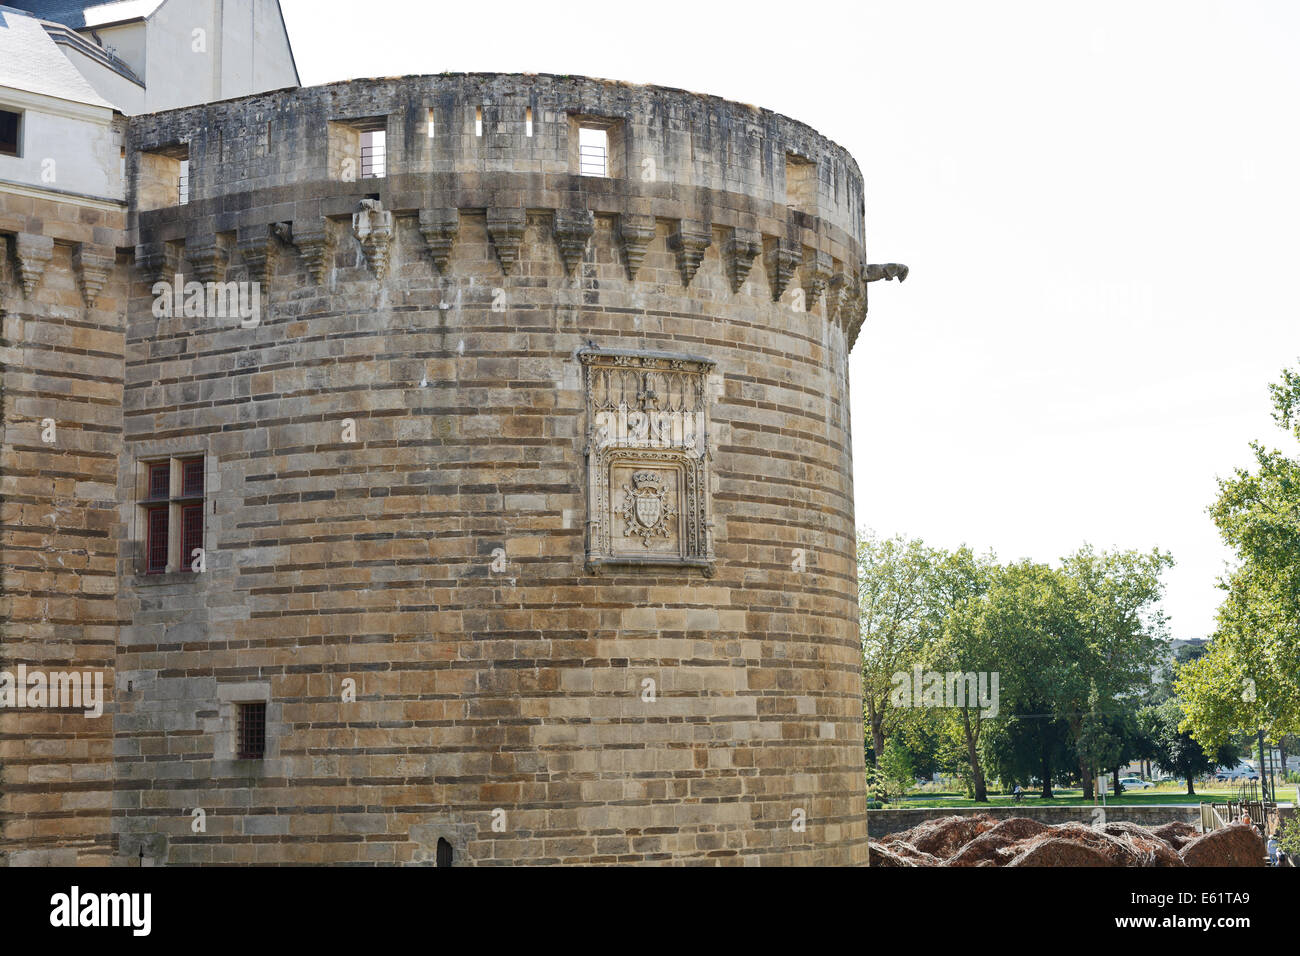 NANTES, FRANCE - 25 juillet 2014 : tour de château des Ducs de Bretagne à Nantes, France. Le château a servi de centre o Banque D'Images